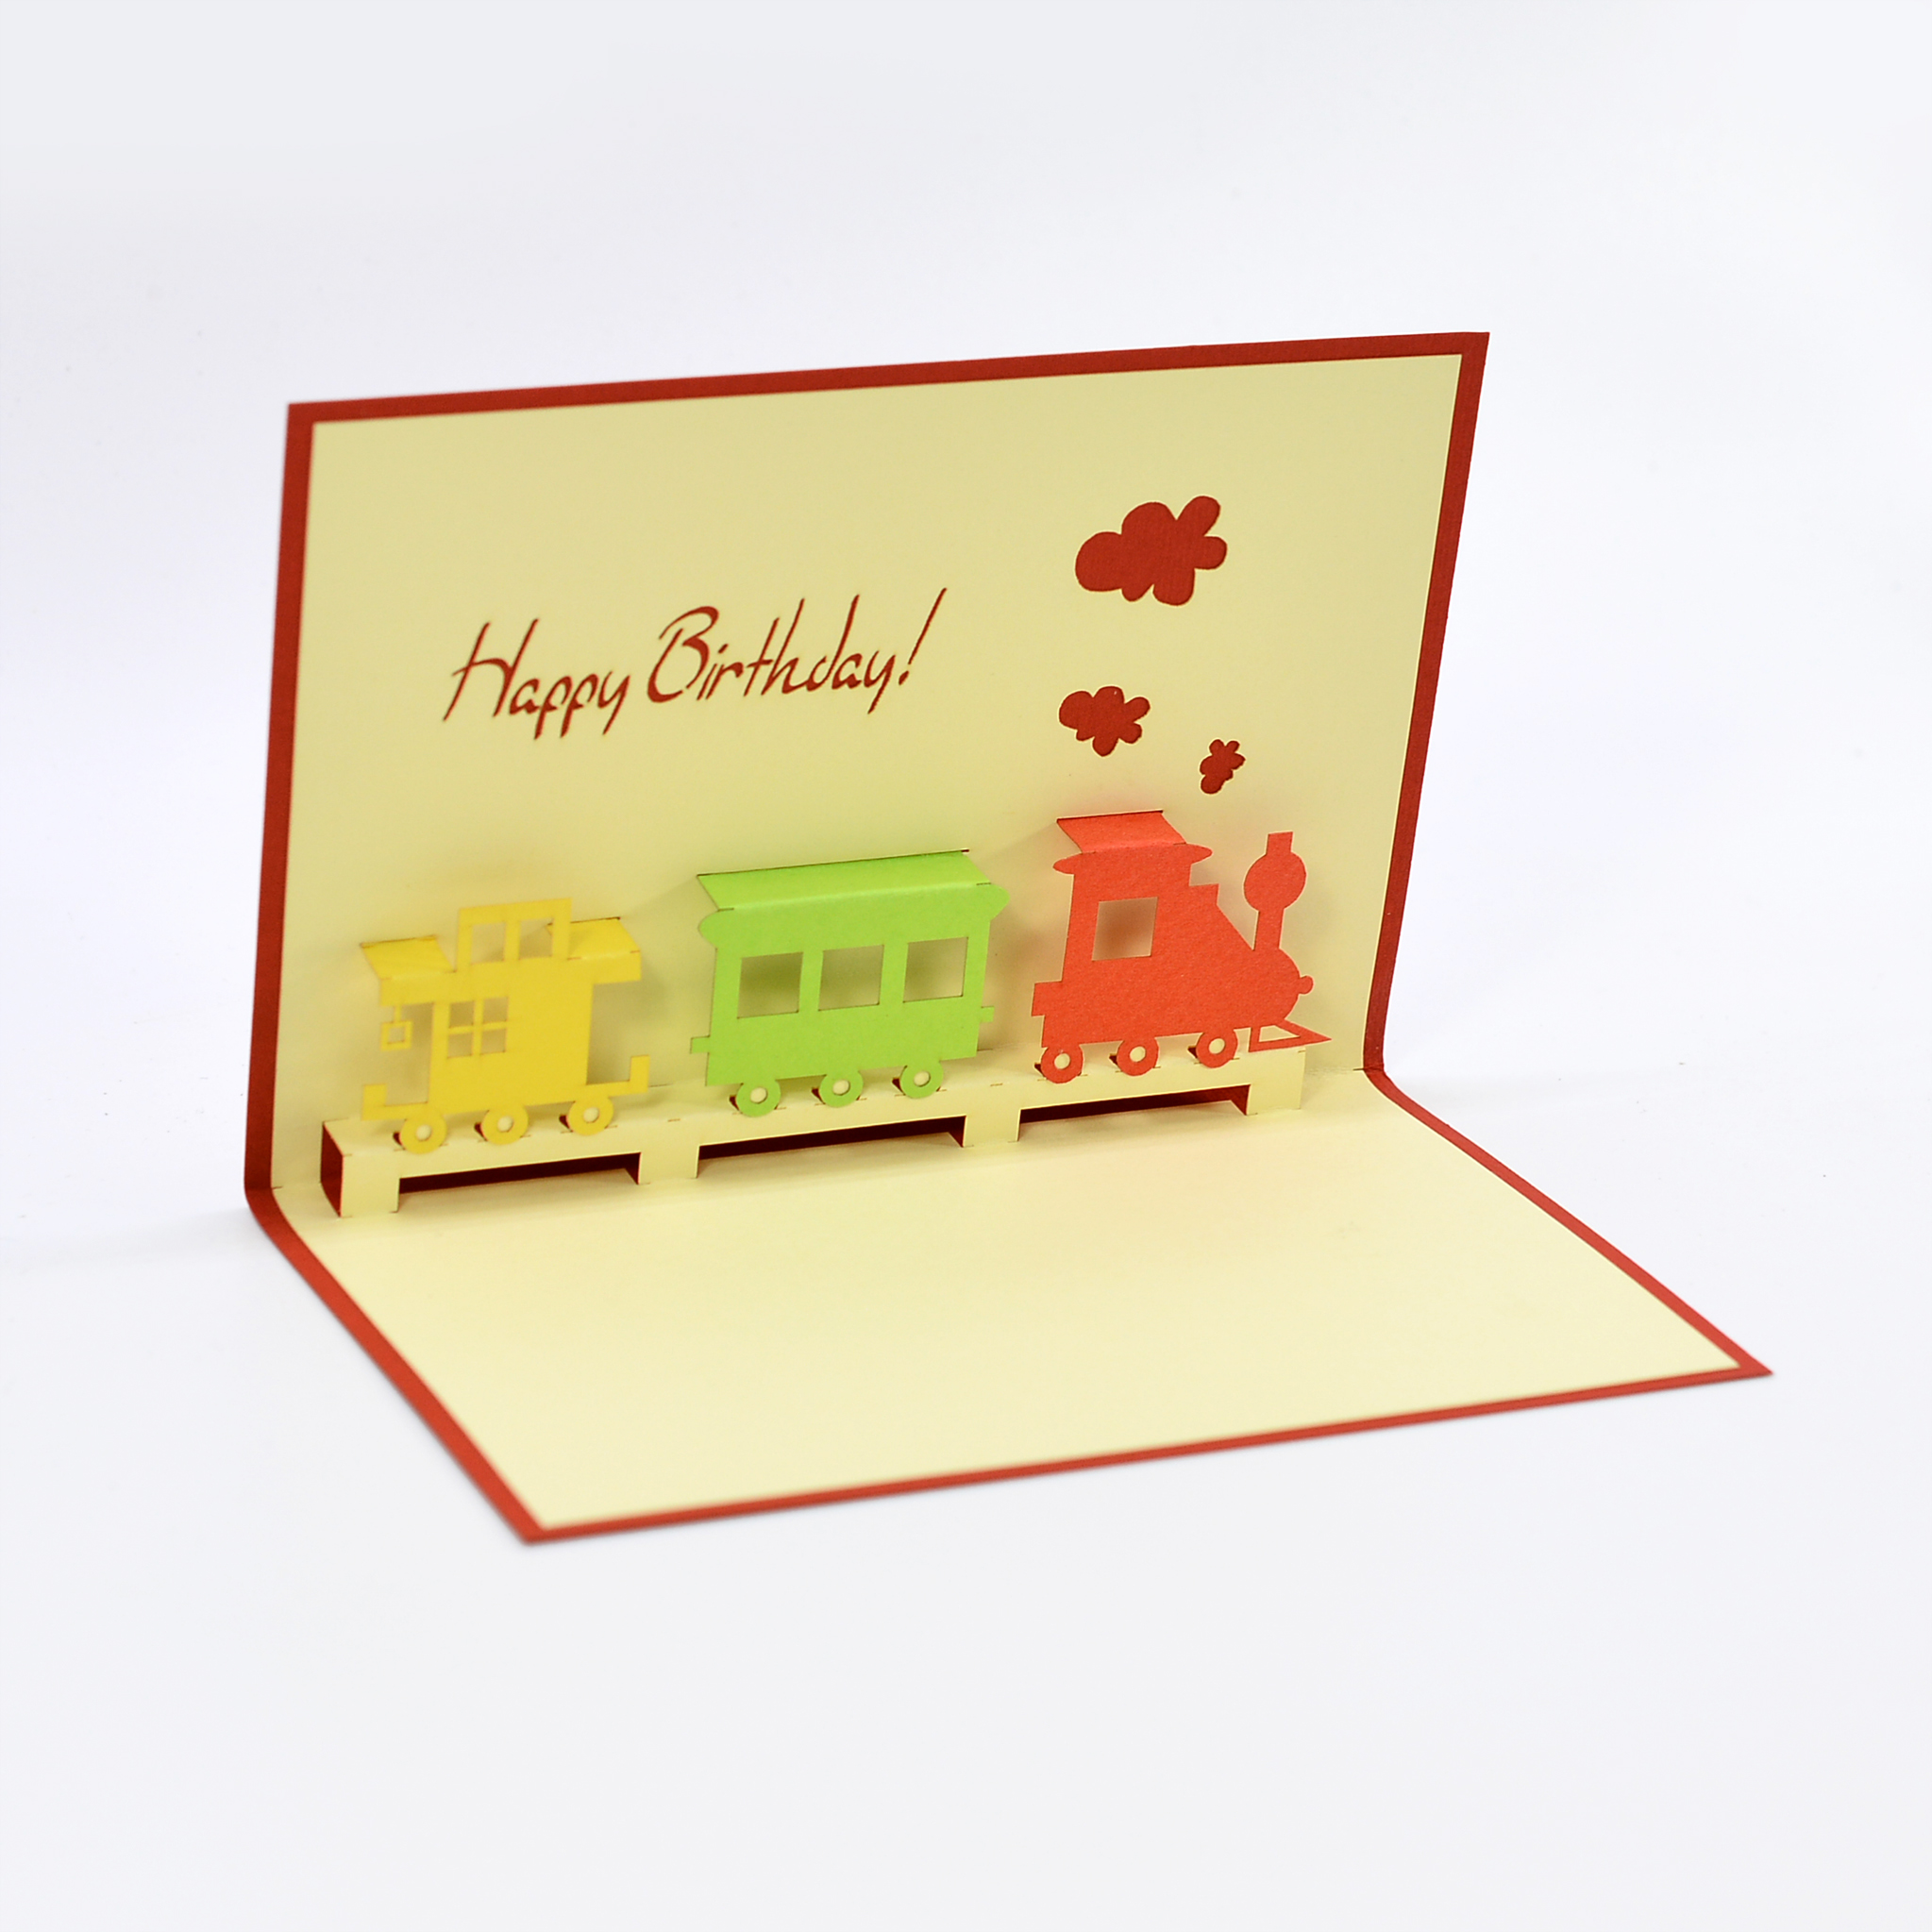 Thiệp nổi 3D handmade Chúc mừng sinh nhật, Happy Birthday 3D pop-up card size 10x15cm BD030